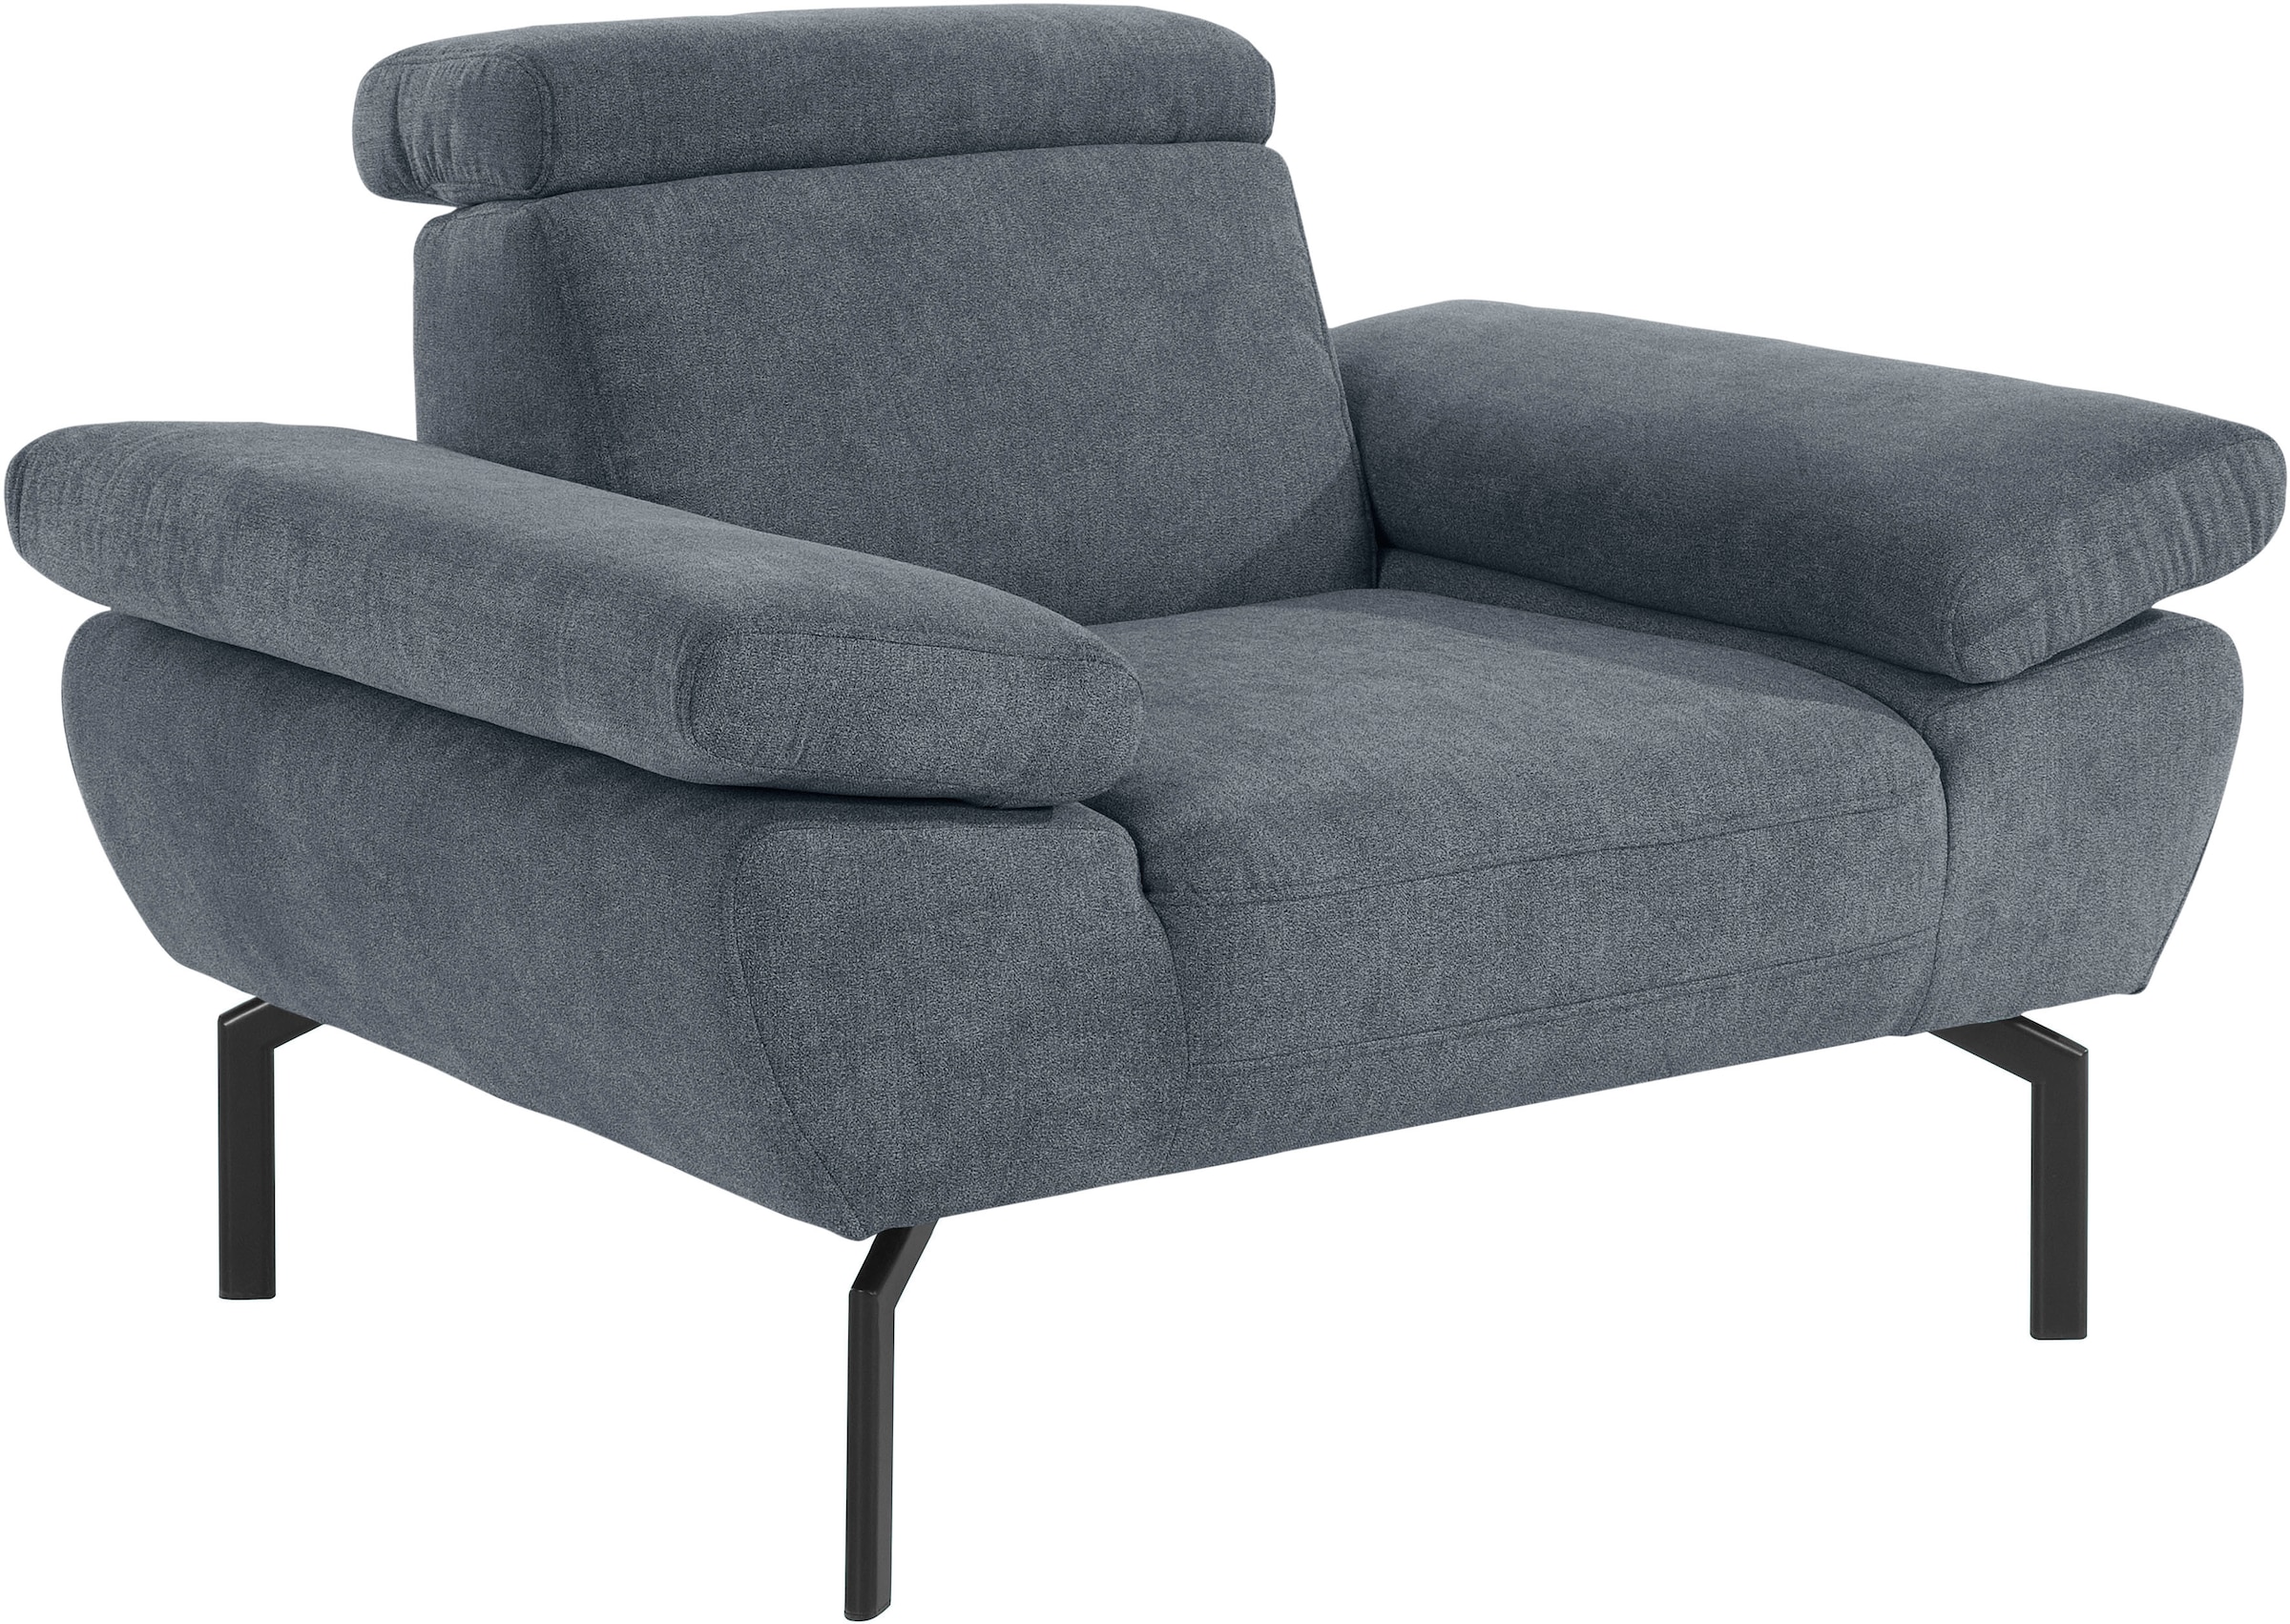 Luxus«, wahlweise mit Lederoptik Sessel of Rückenverstellung, Places in Style kaufen »Trapino online Luxus-Microfaser